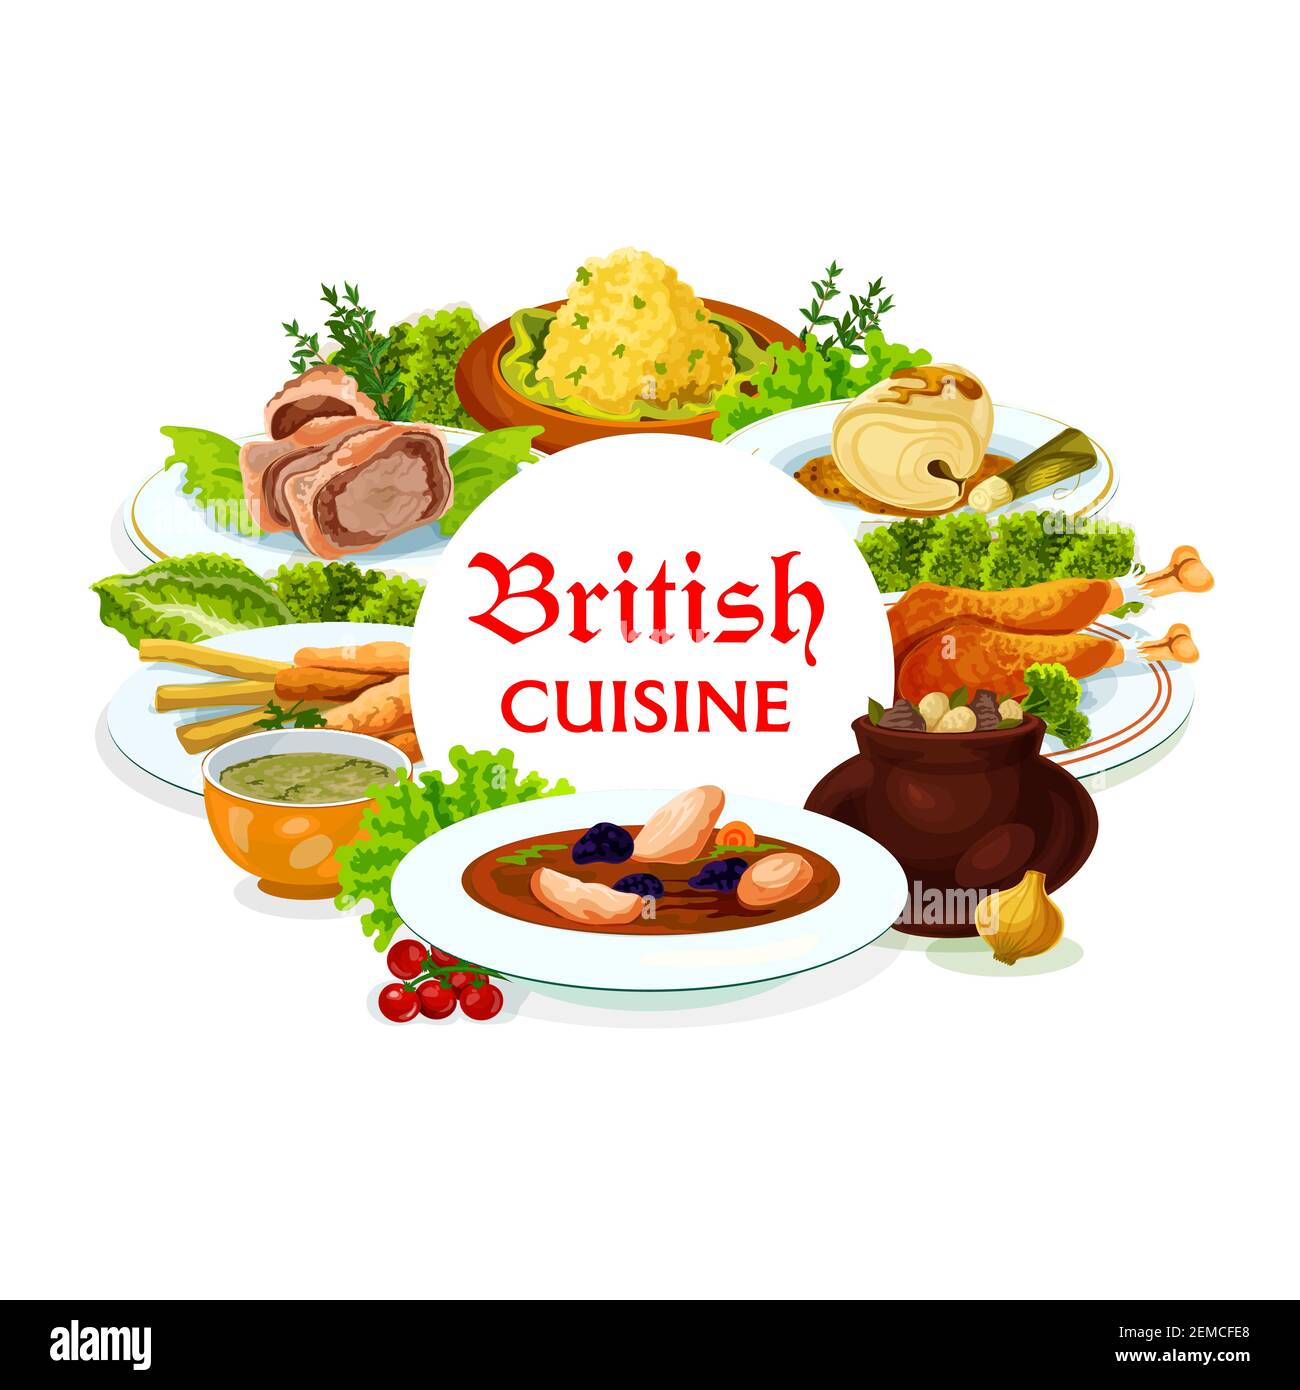 Cuisine de Grande-Bretagne repas vectoriels soupe de scotch kok-e-liki, morue à la sauce et assiette de truite fumée, Wellington de boeuf, brocoli et purée de légumes. Ragoût de lapin Illustration de Vecteur